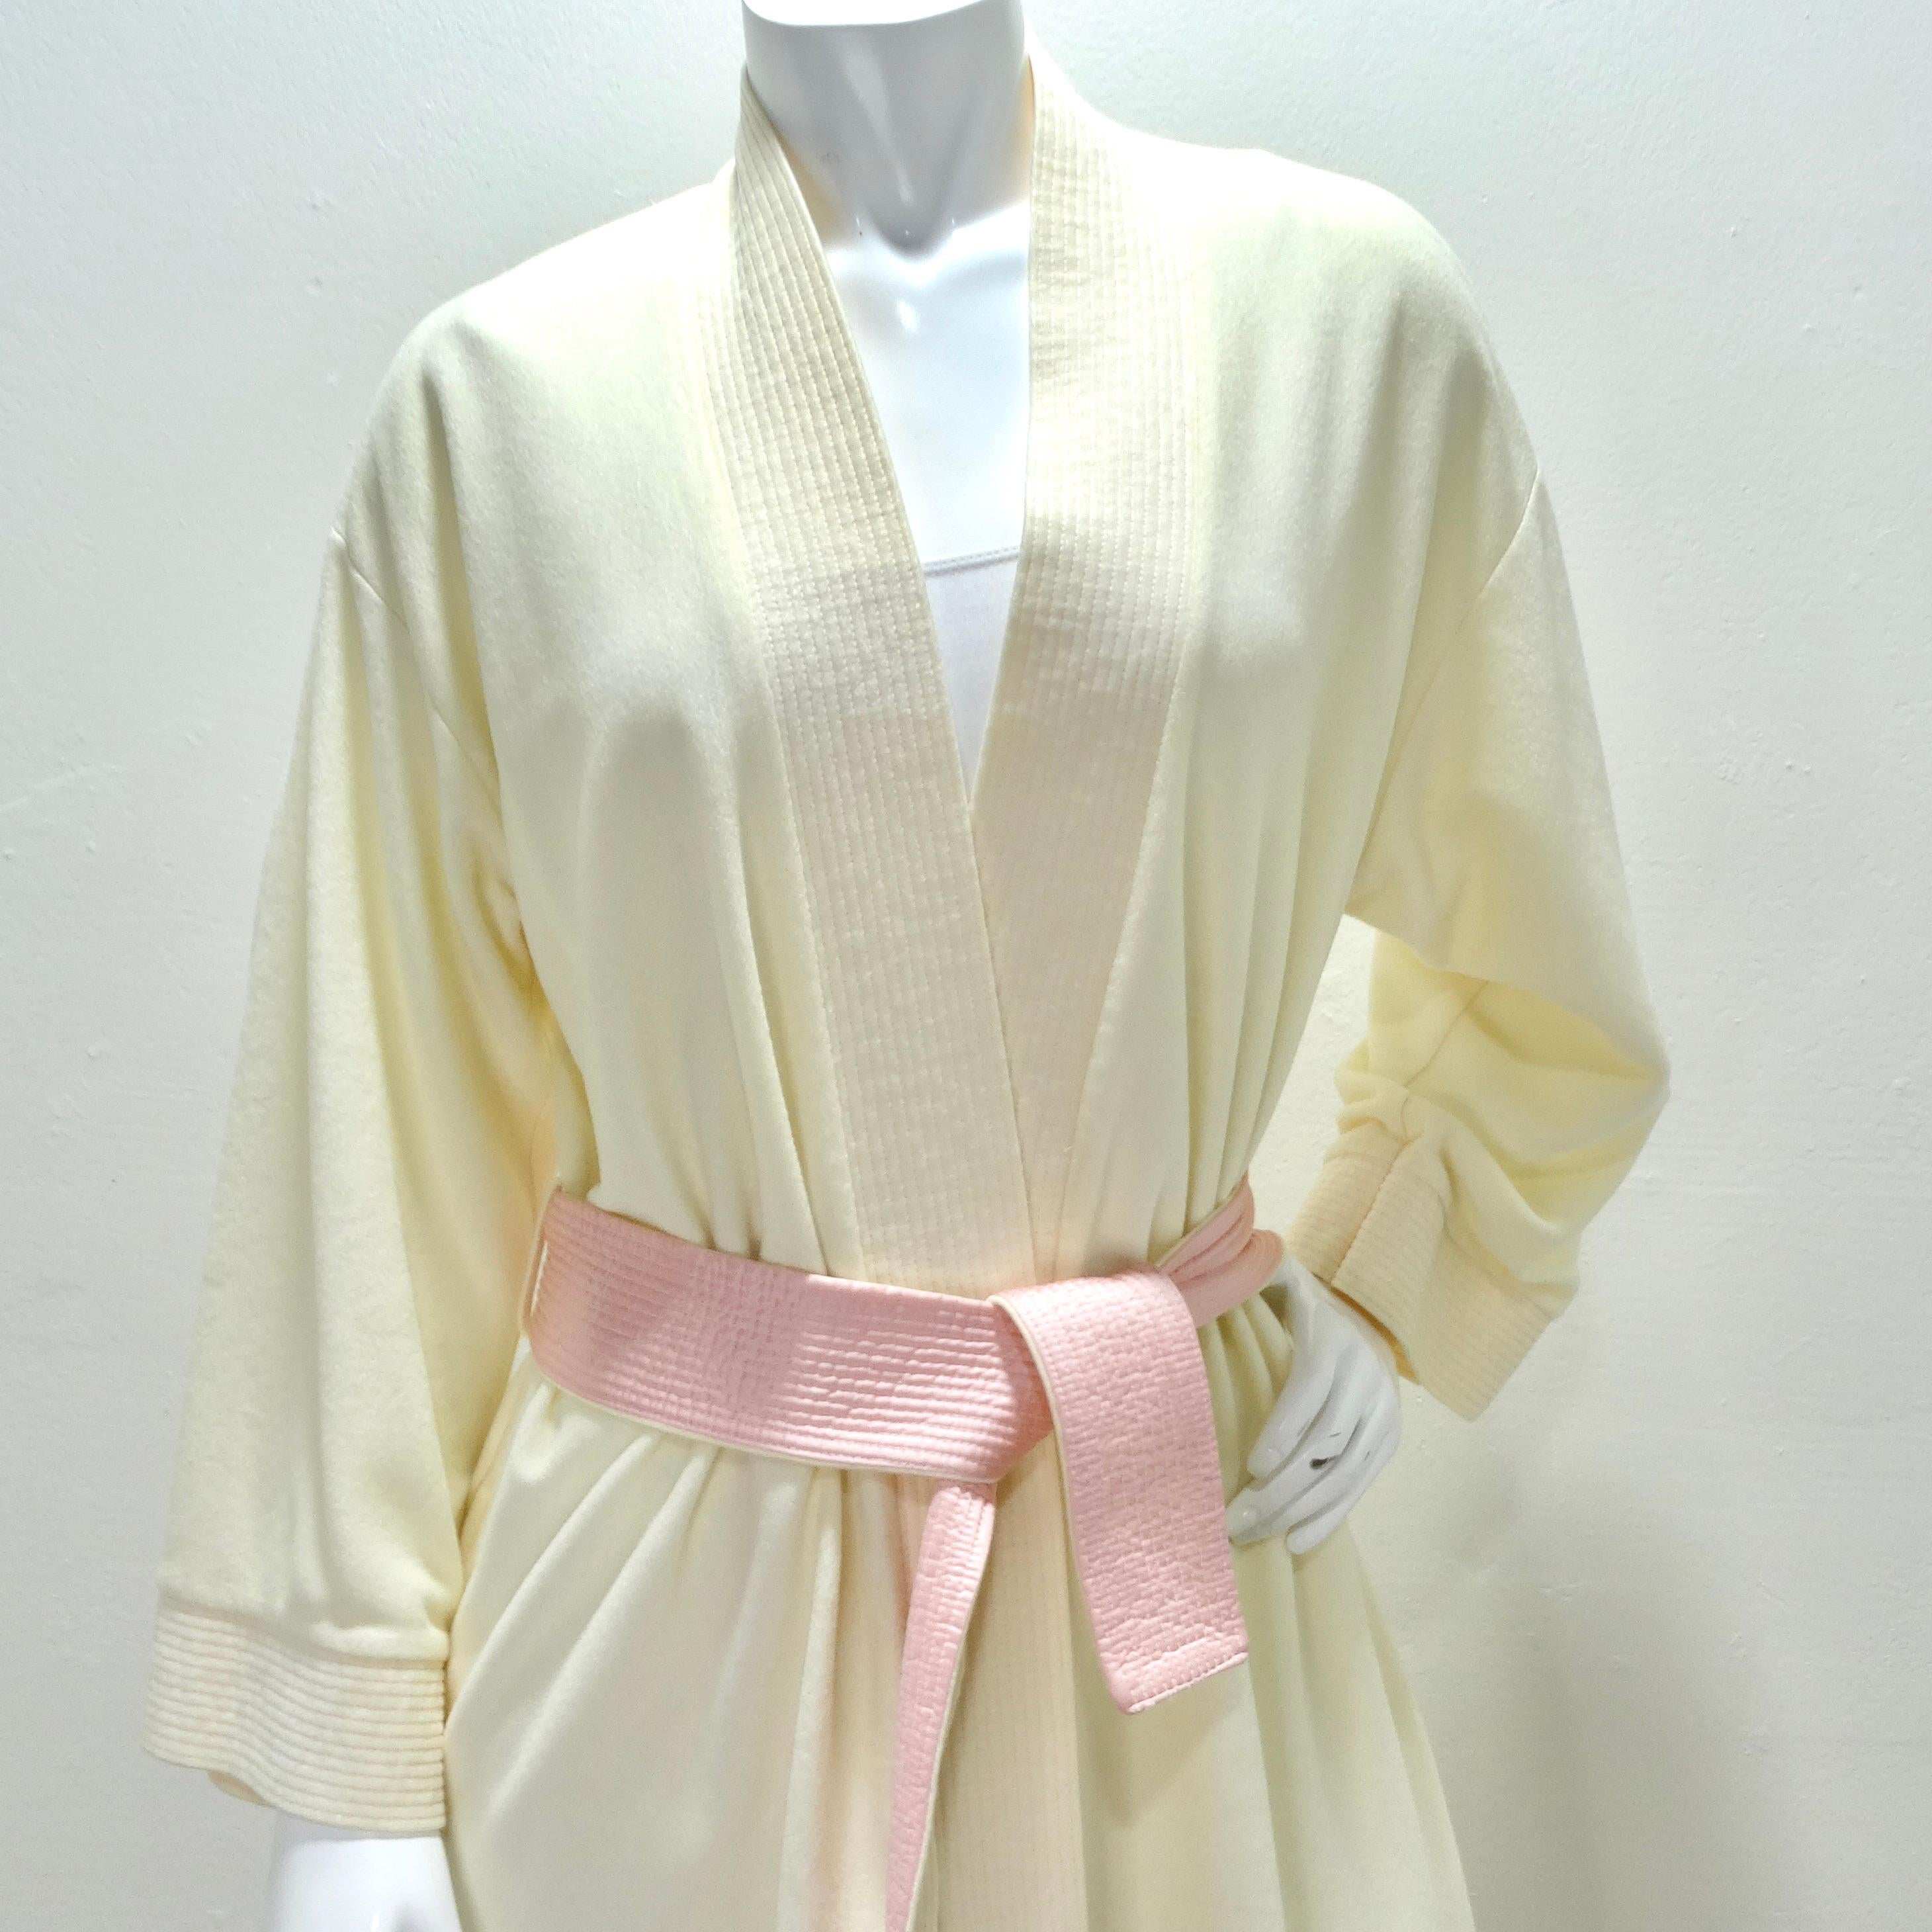 Die 1980er Lotusblumen-Robe von Bill Tice - ein zeitloses Stück Luxus und Stil. Dieser klassische elfenbeinfarbene Bademantel ist mehr als nur Loungewear: Er ist ein Statement für Eleganz und Komfort. Es wurde mit Sorgfalt und Liebe zum Detail